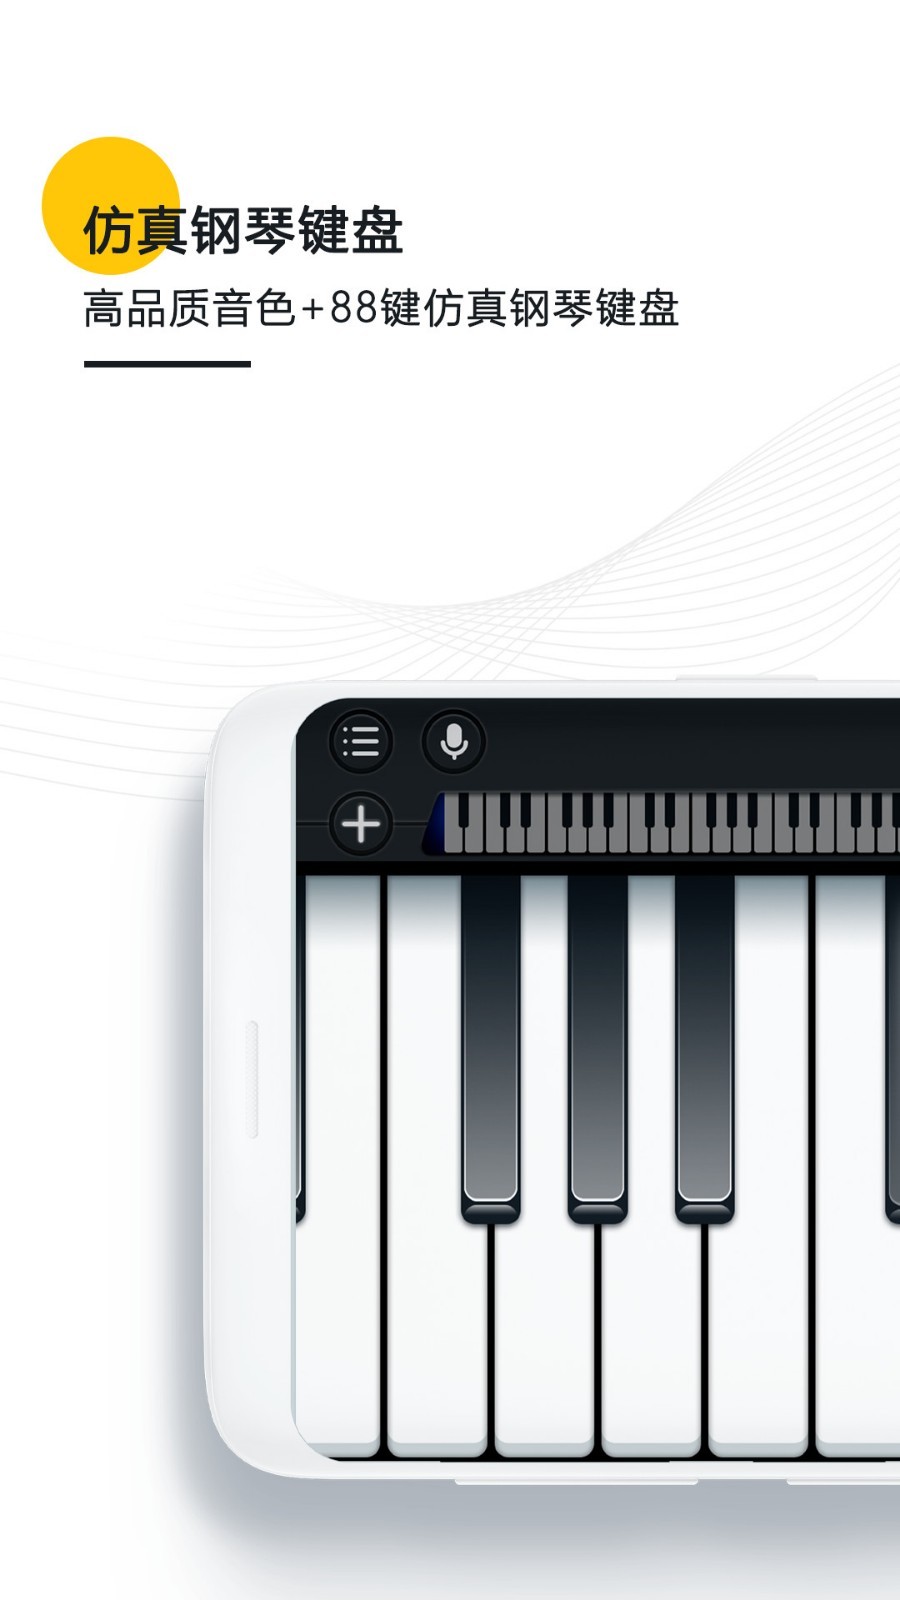 自动弹奏的钢琴app推荐